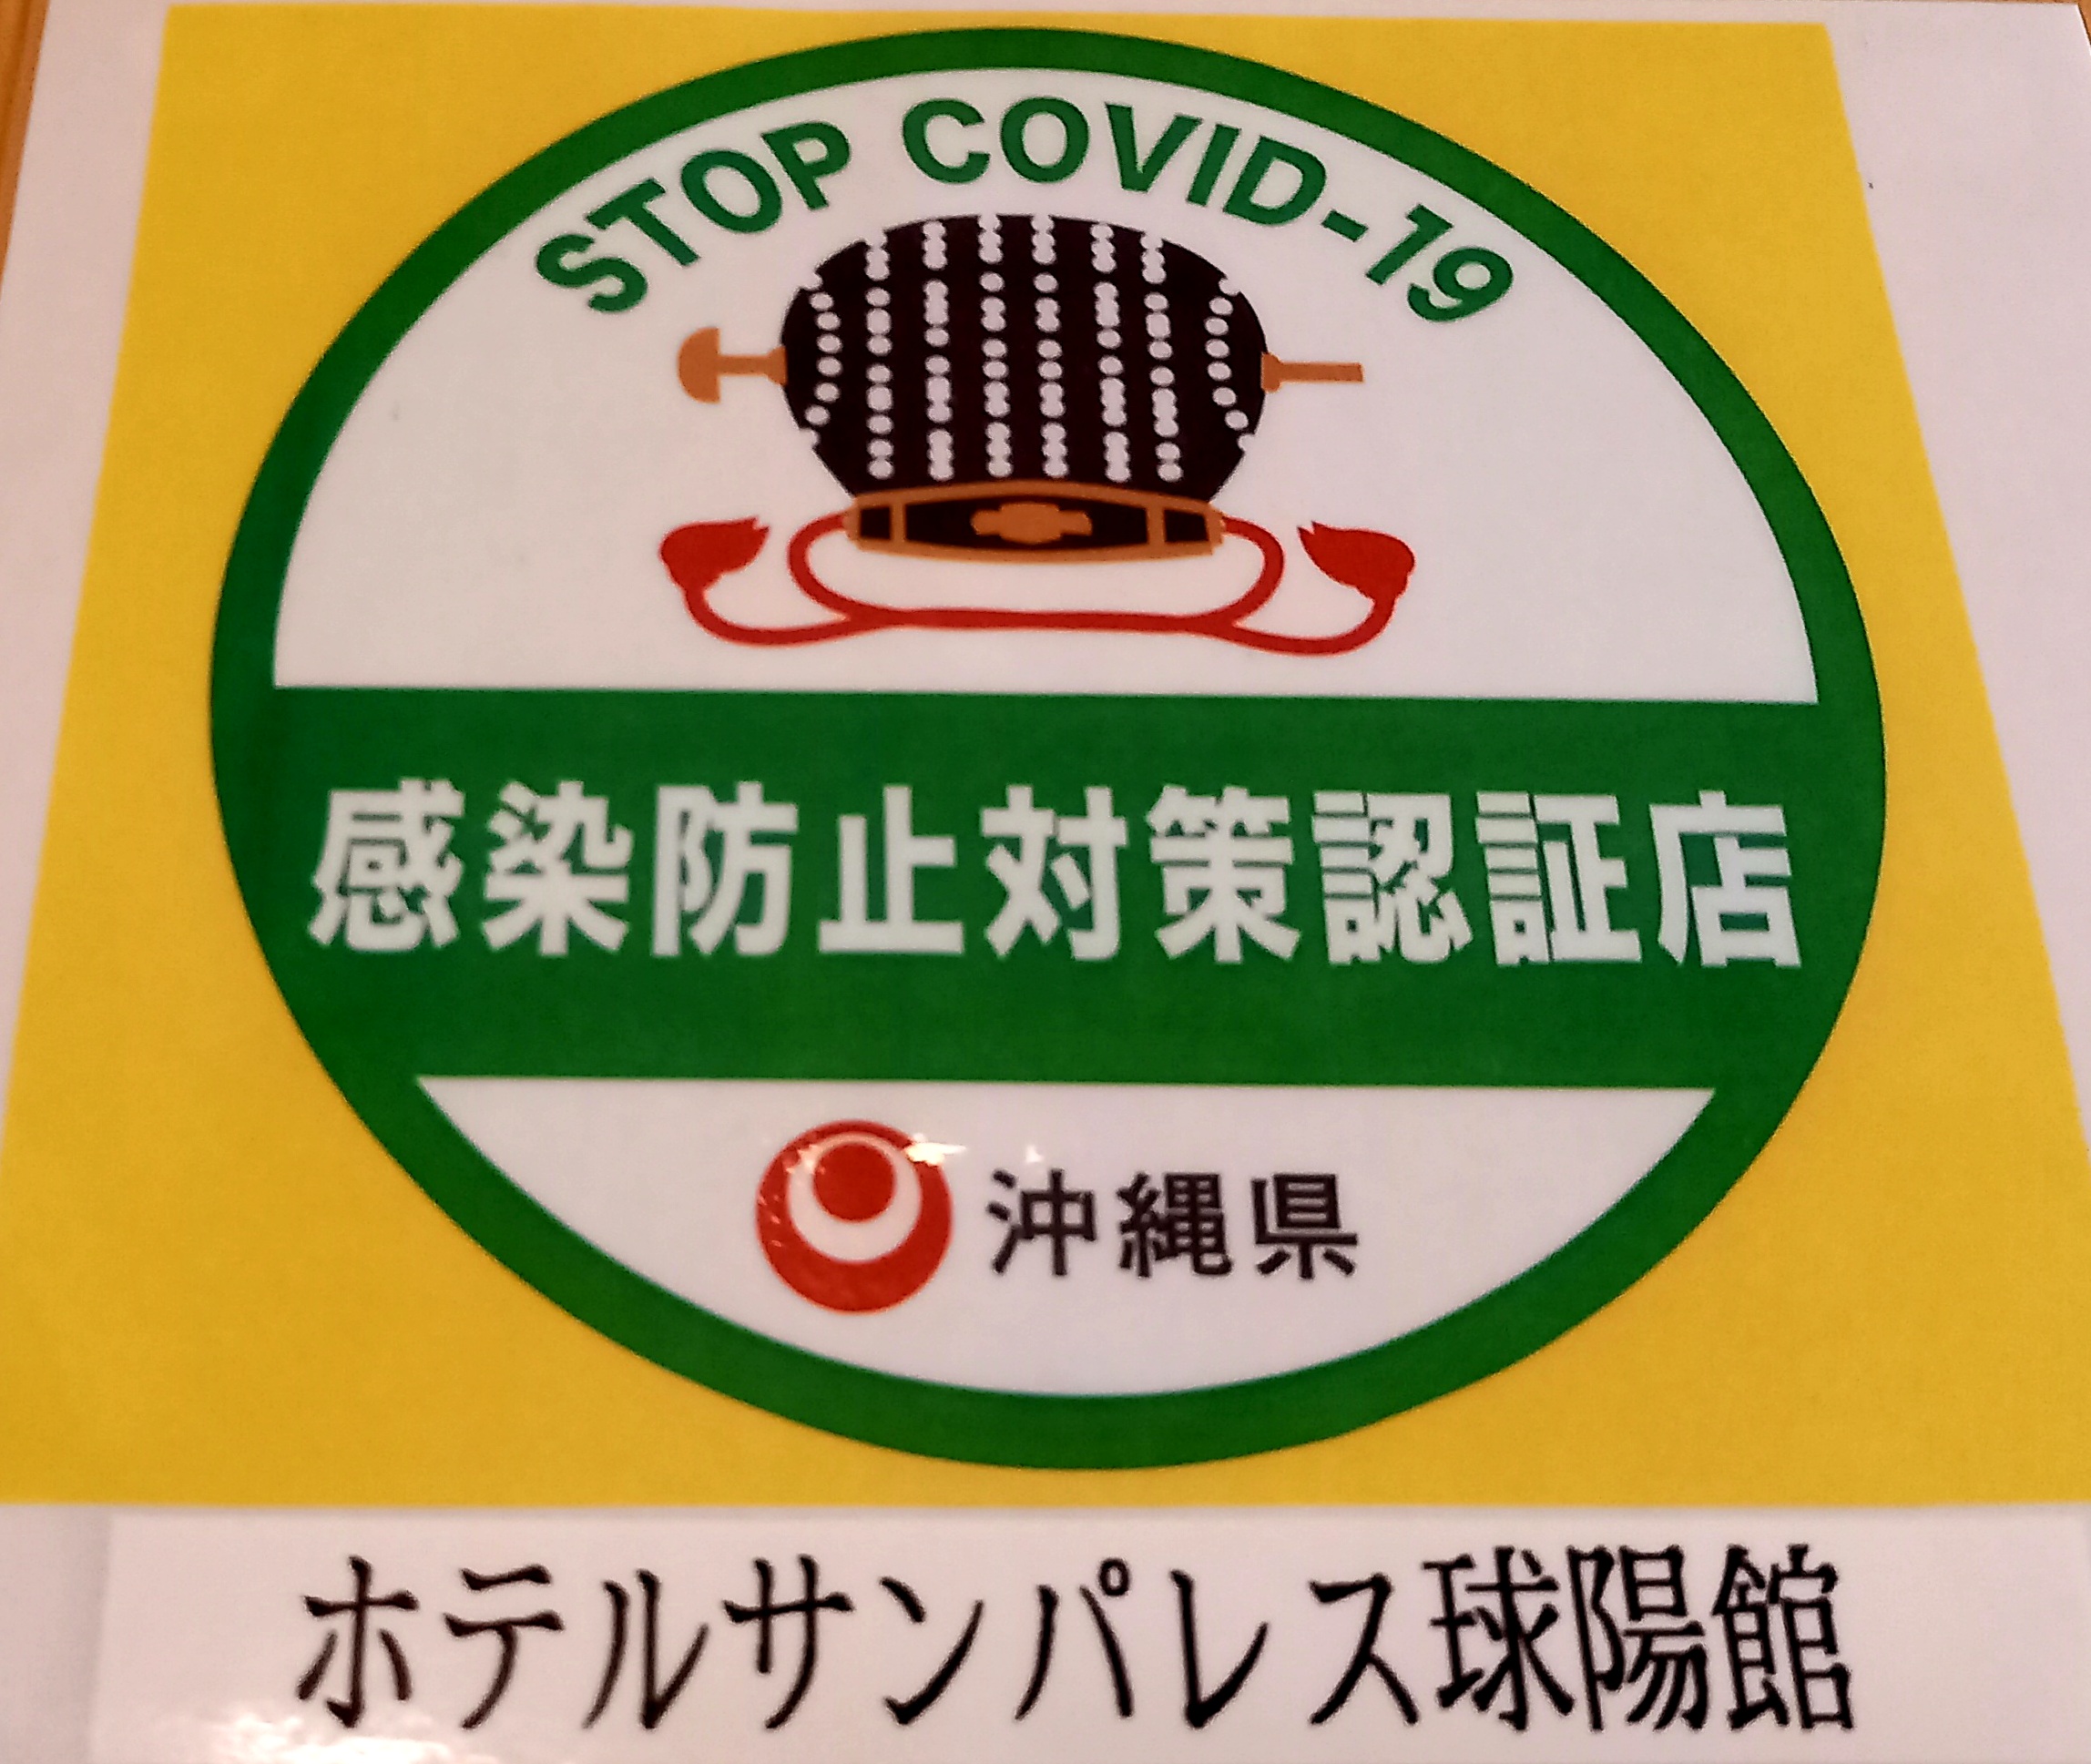 「沖縄県感染防止対策認証制度」について